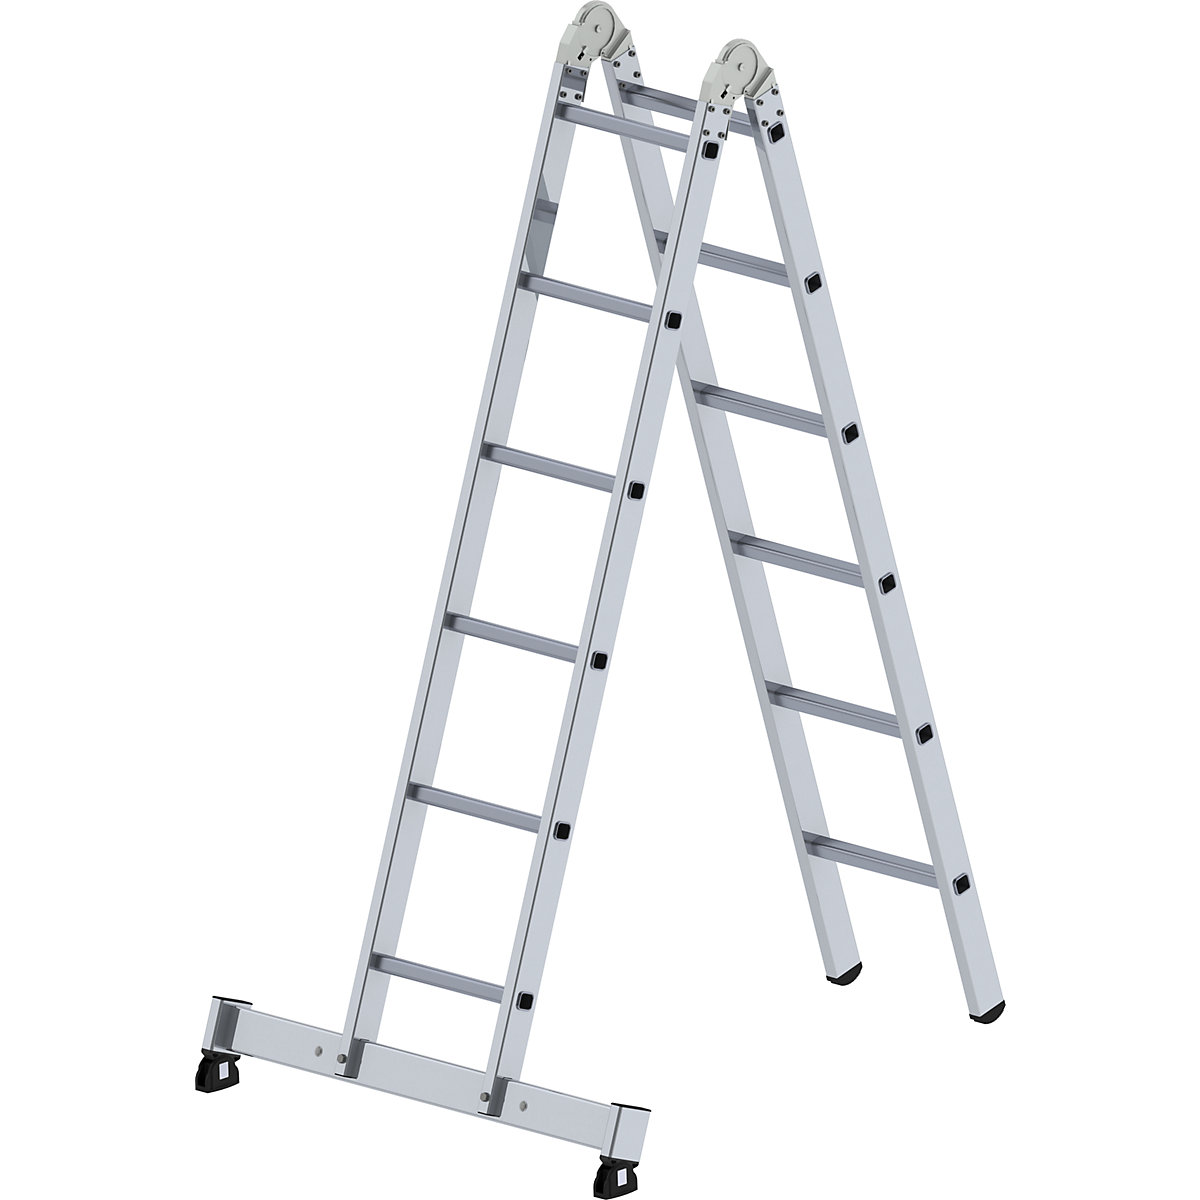 MUNK – Escada articulada em alumínio, utilizável como escada de encosto e escada dupla, 2 x 6 degraus